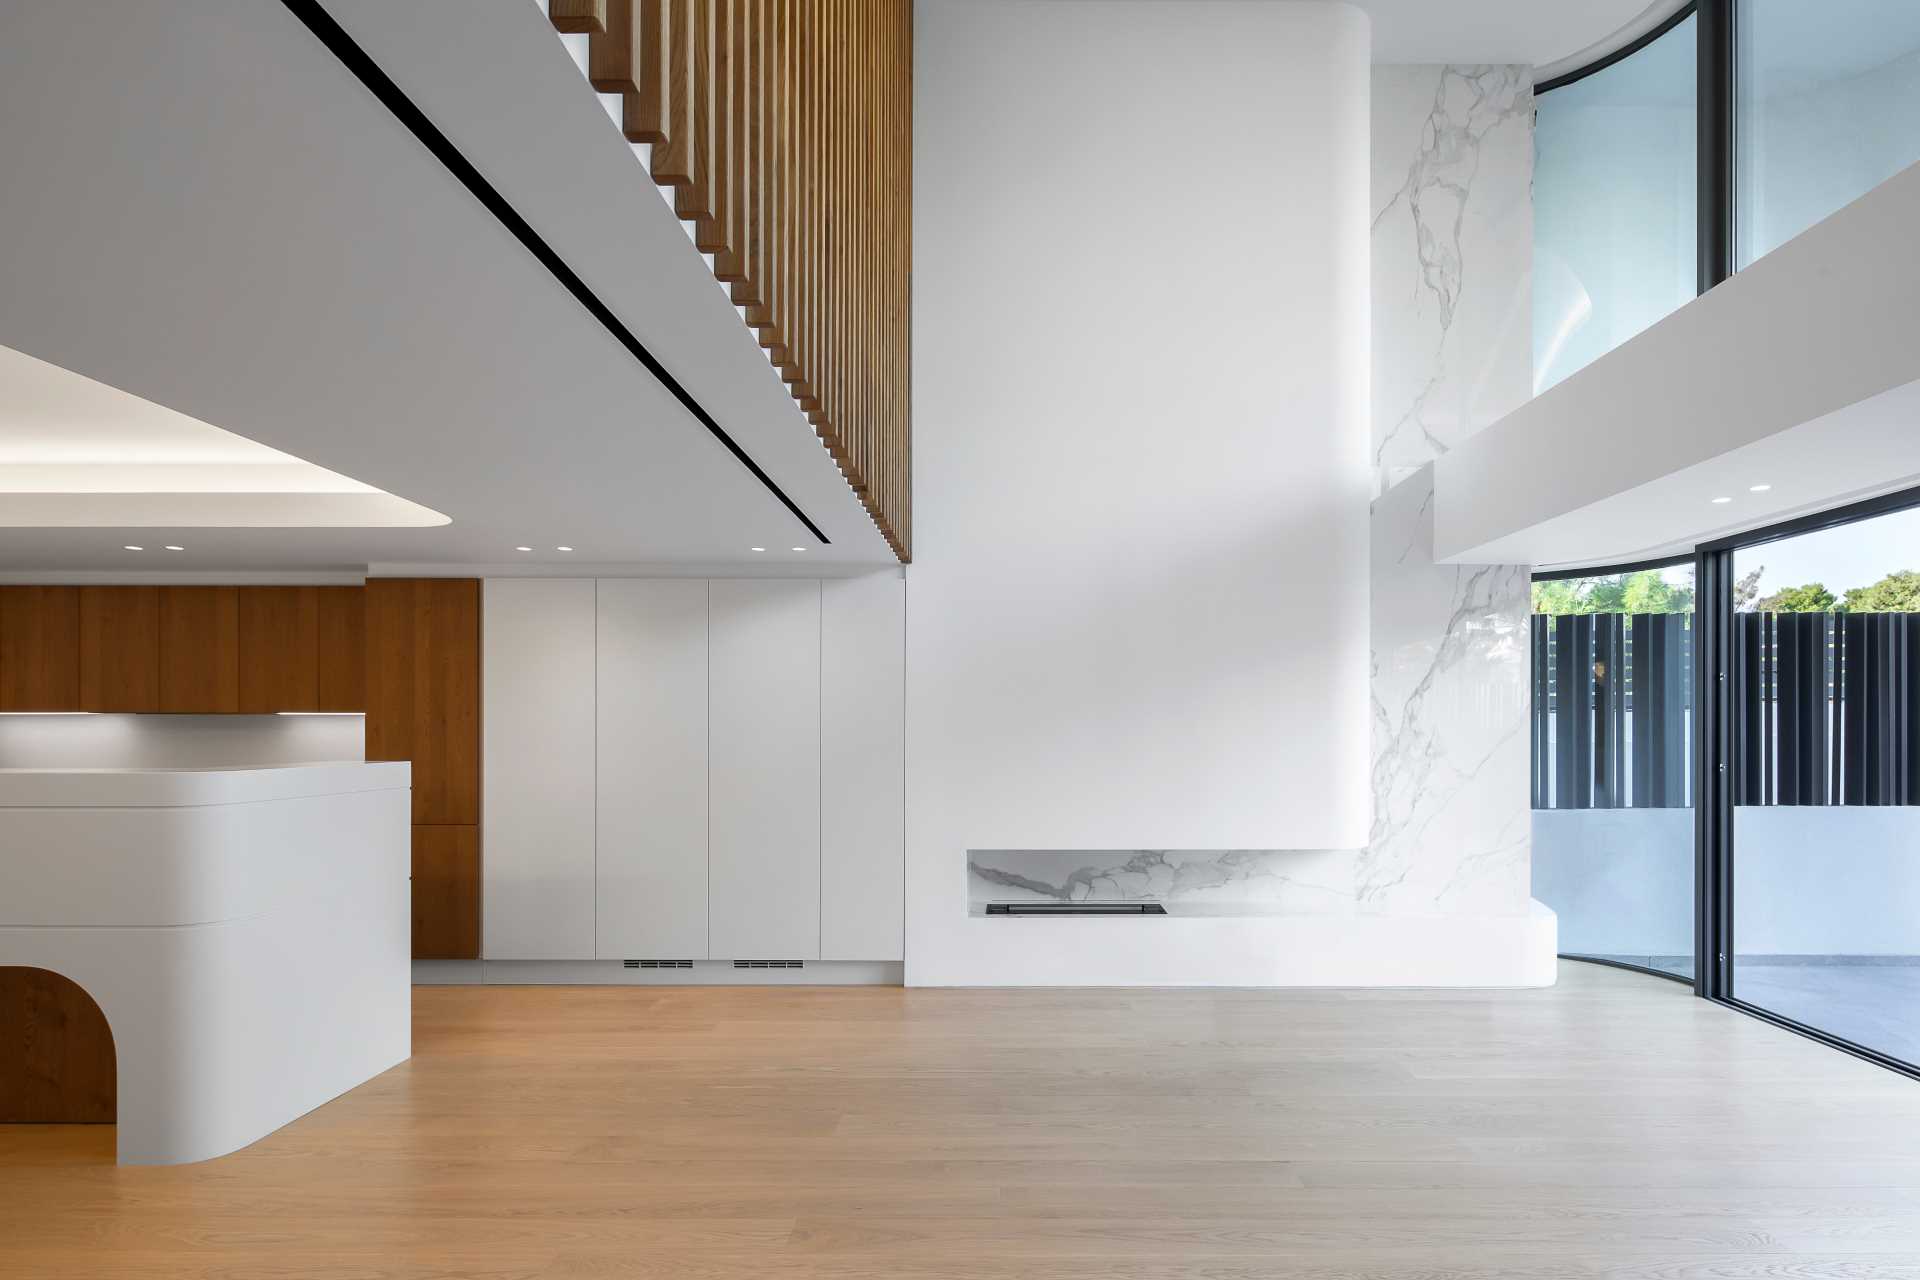 یک فضای داخلی سفید مدرن با لهجه های چوبی و کفپوش.